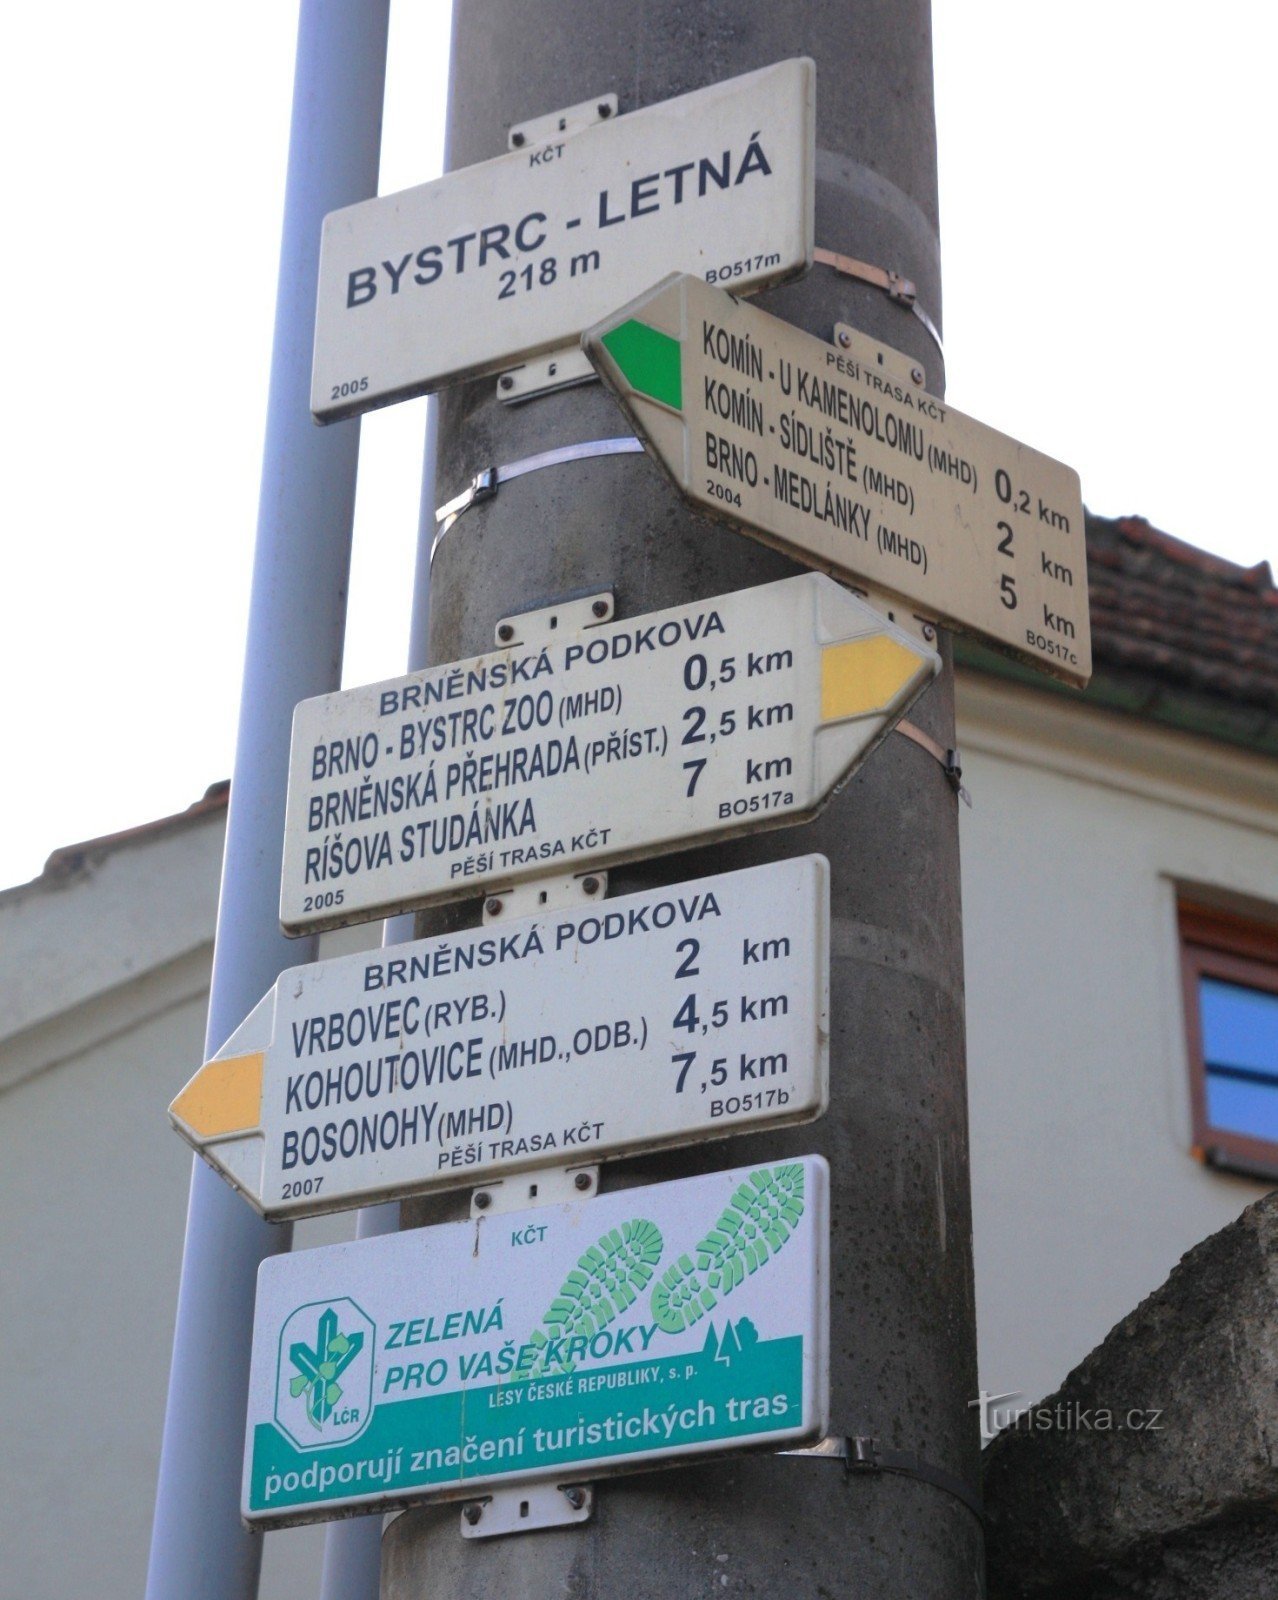 Ngã tư du lịch Bystrc-Letná